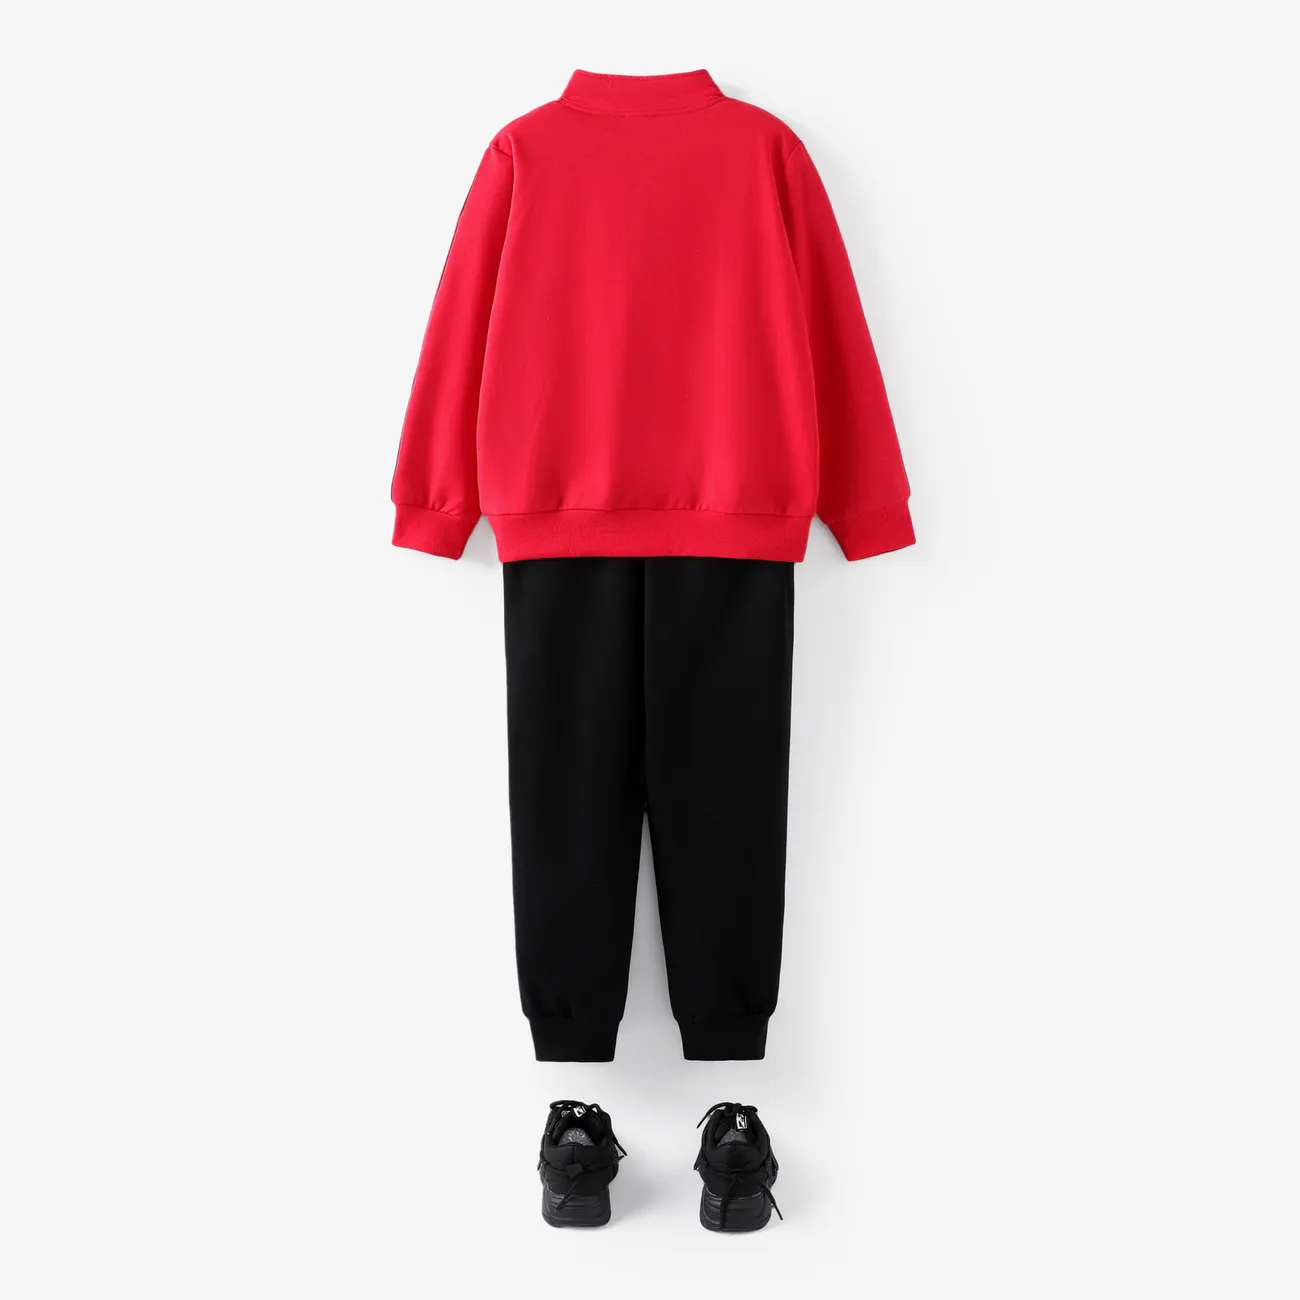 2 قطعة طفل صبي إلكتروني طباعة سستة تصميم قميص من النوع الثقيل الأحمر ومجموعة السراويل المرنة أحمر big image 1